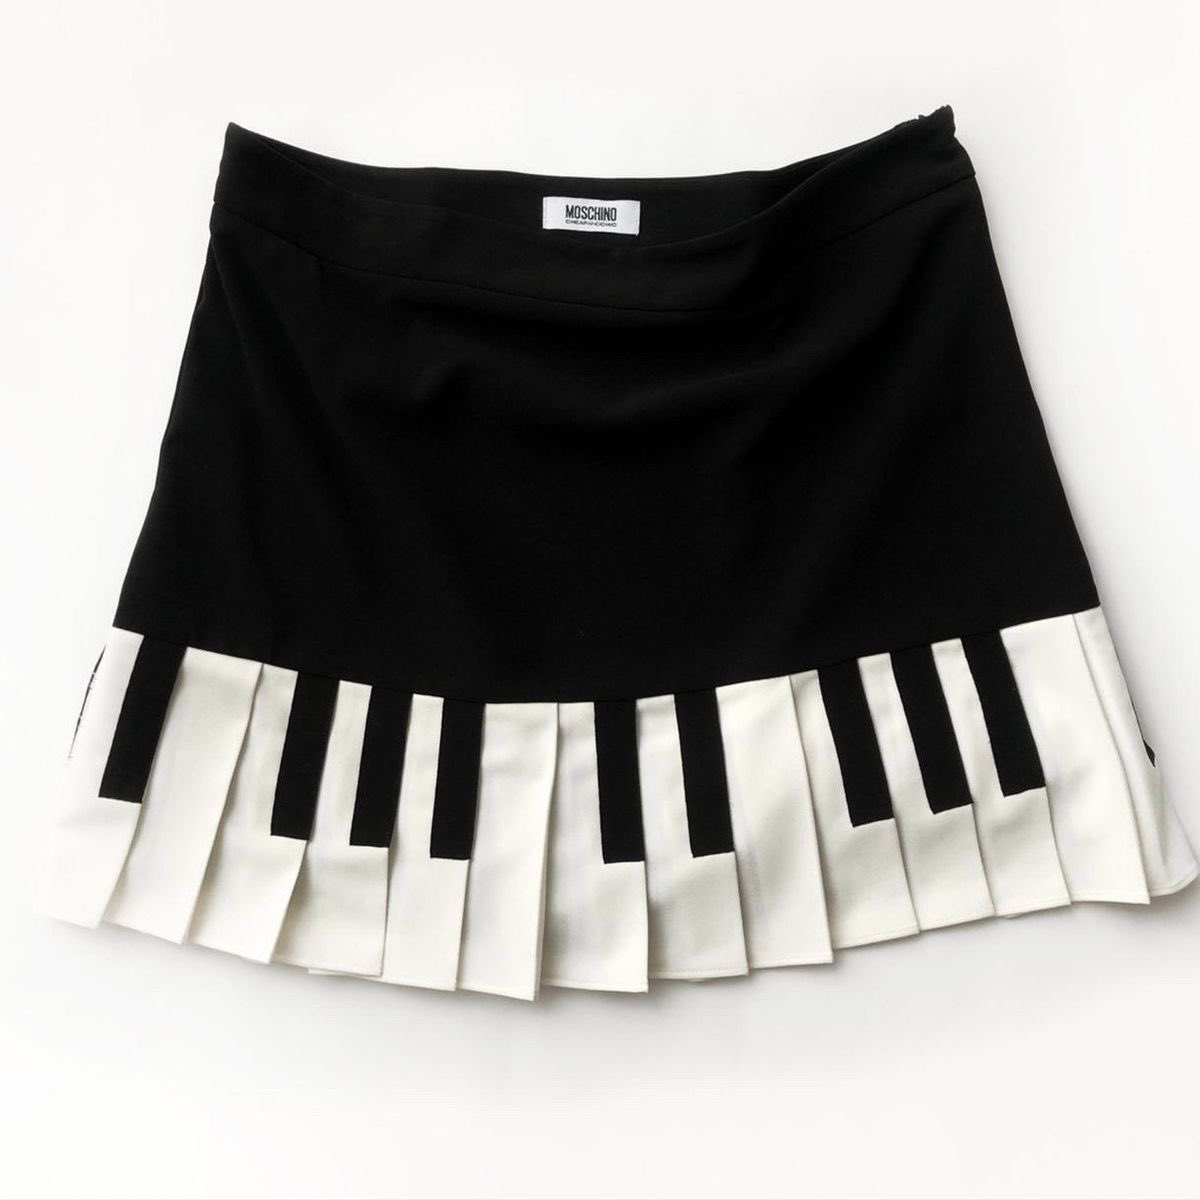 Moschino’s ‘90s Pleated Piano Skirt